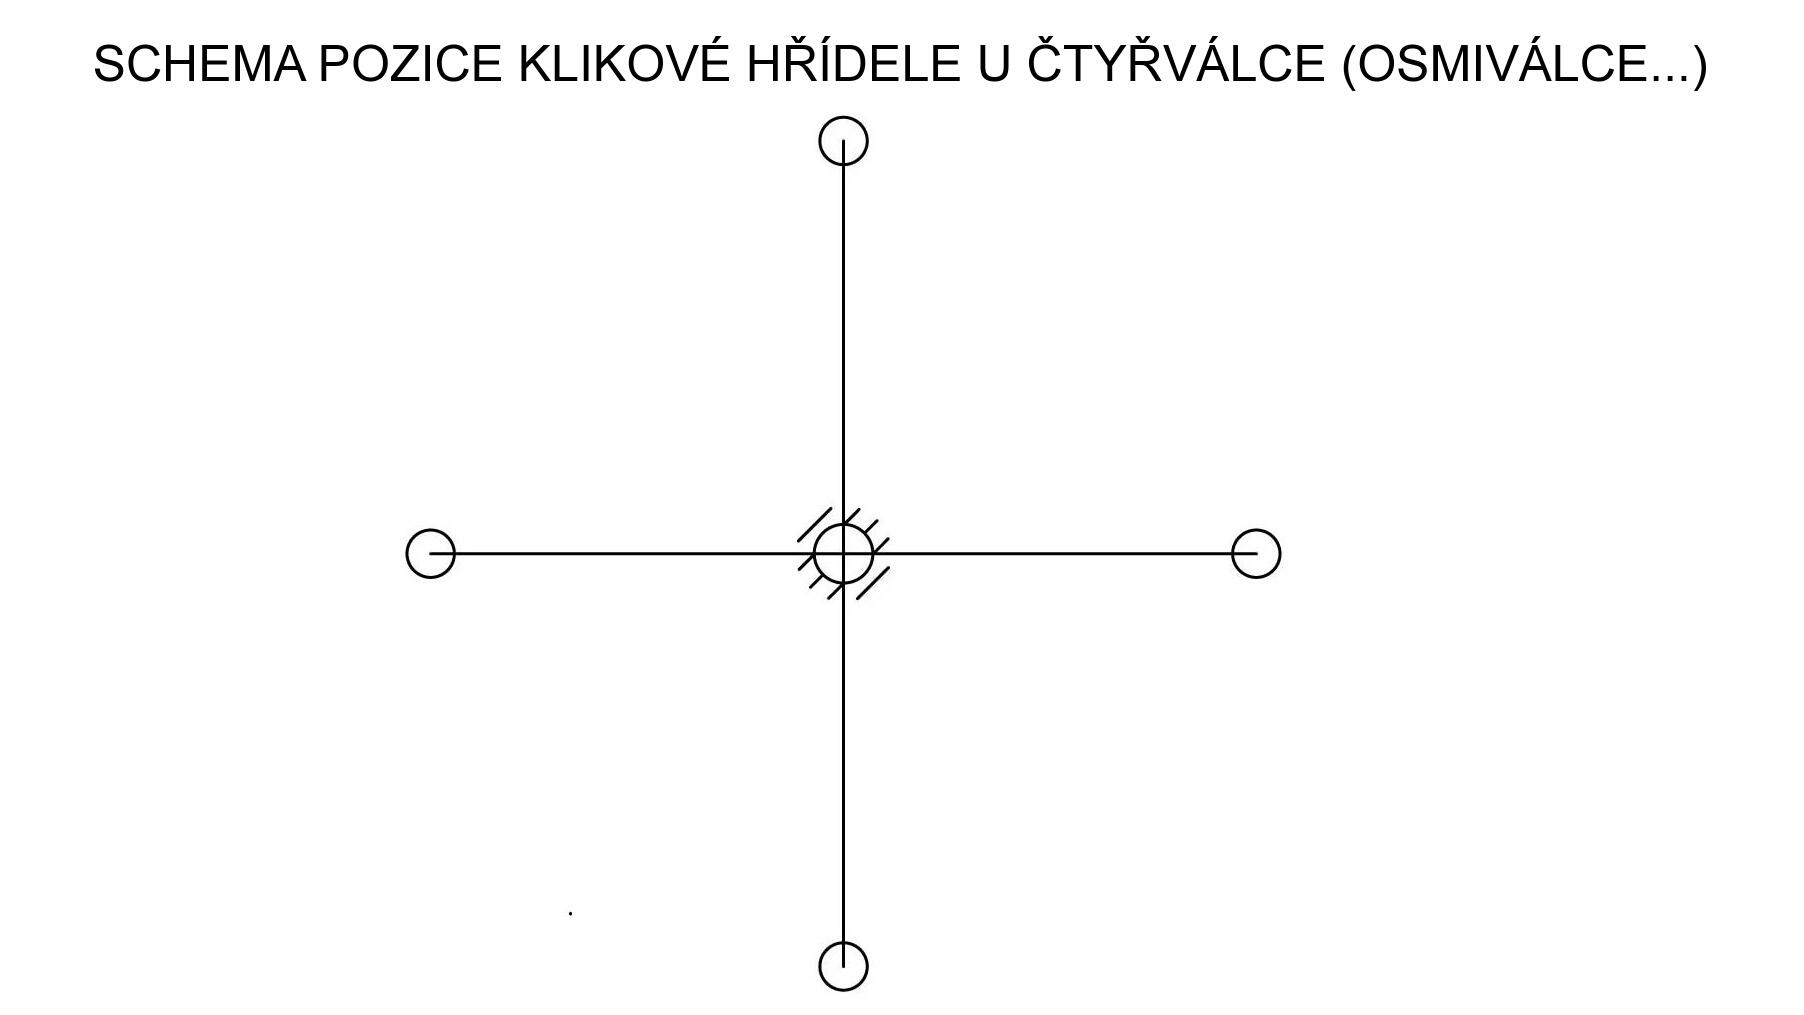 Schéma pozice klikové hřídele u čtyřválce